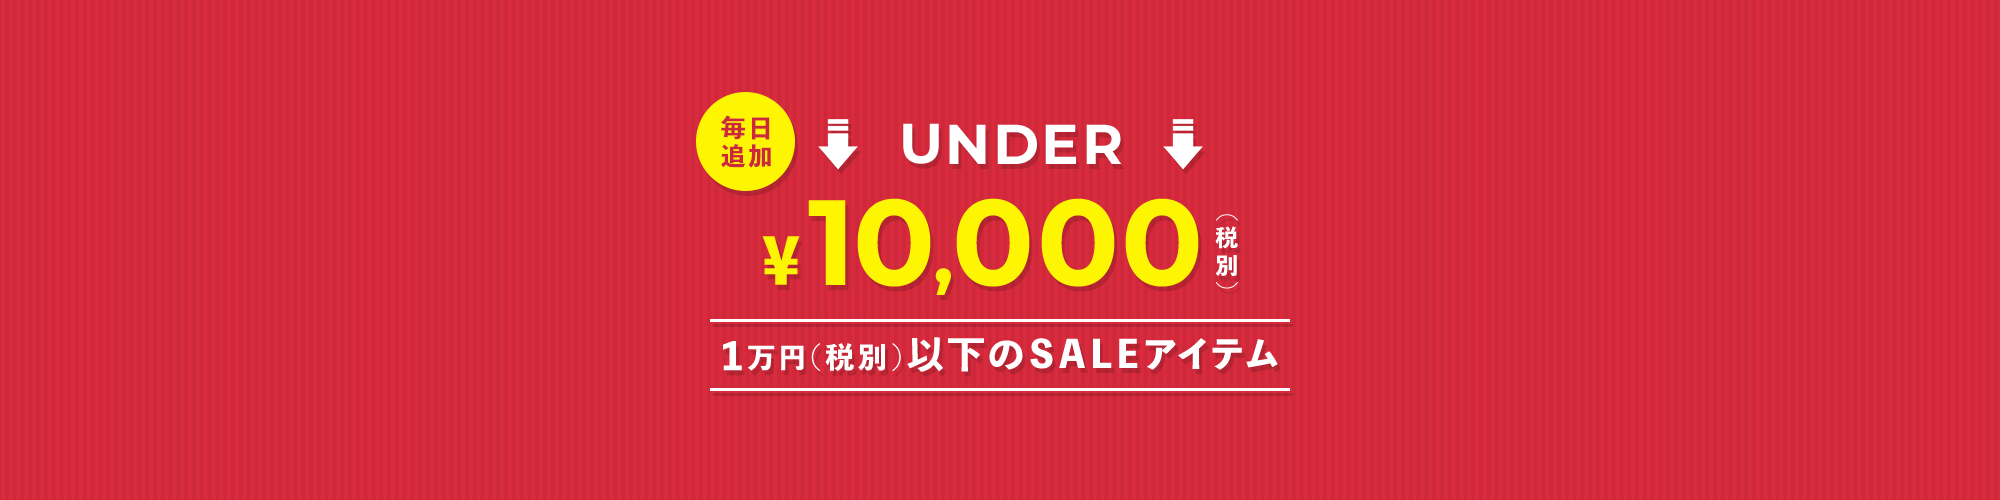 10,000円(税別)以下SALE特集